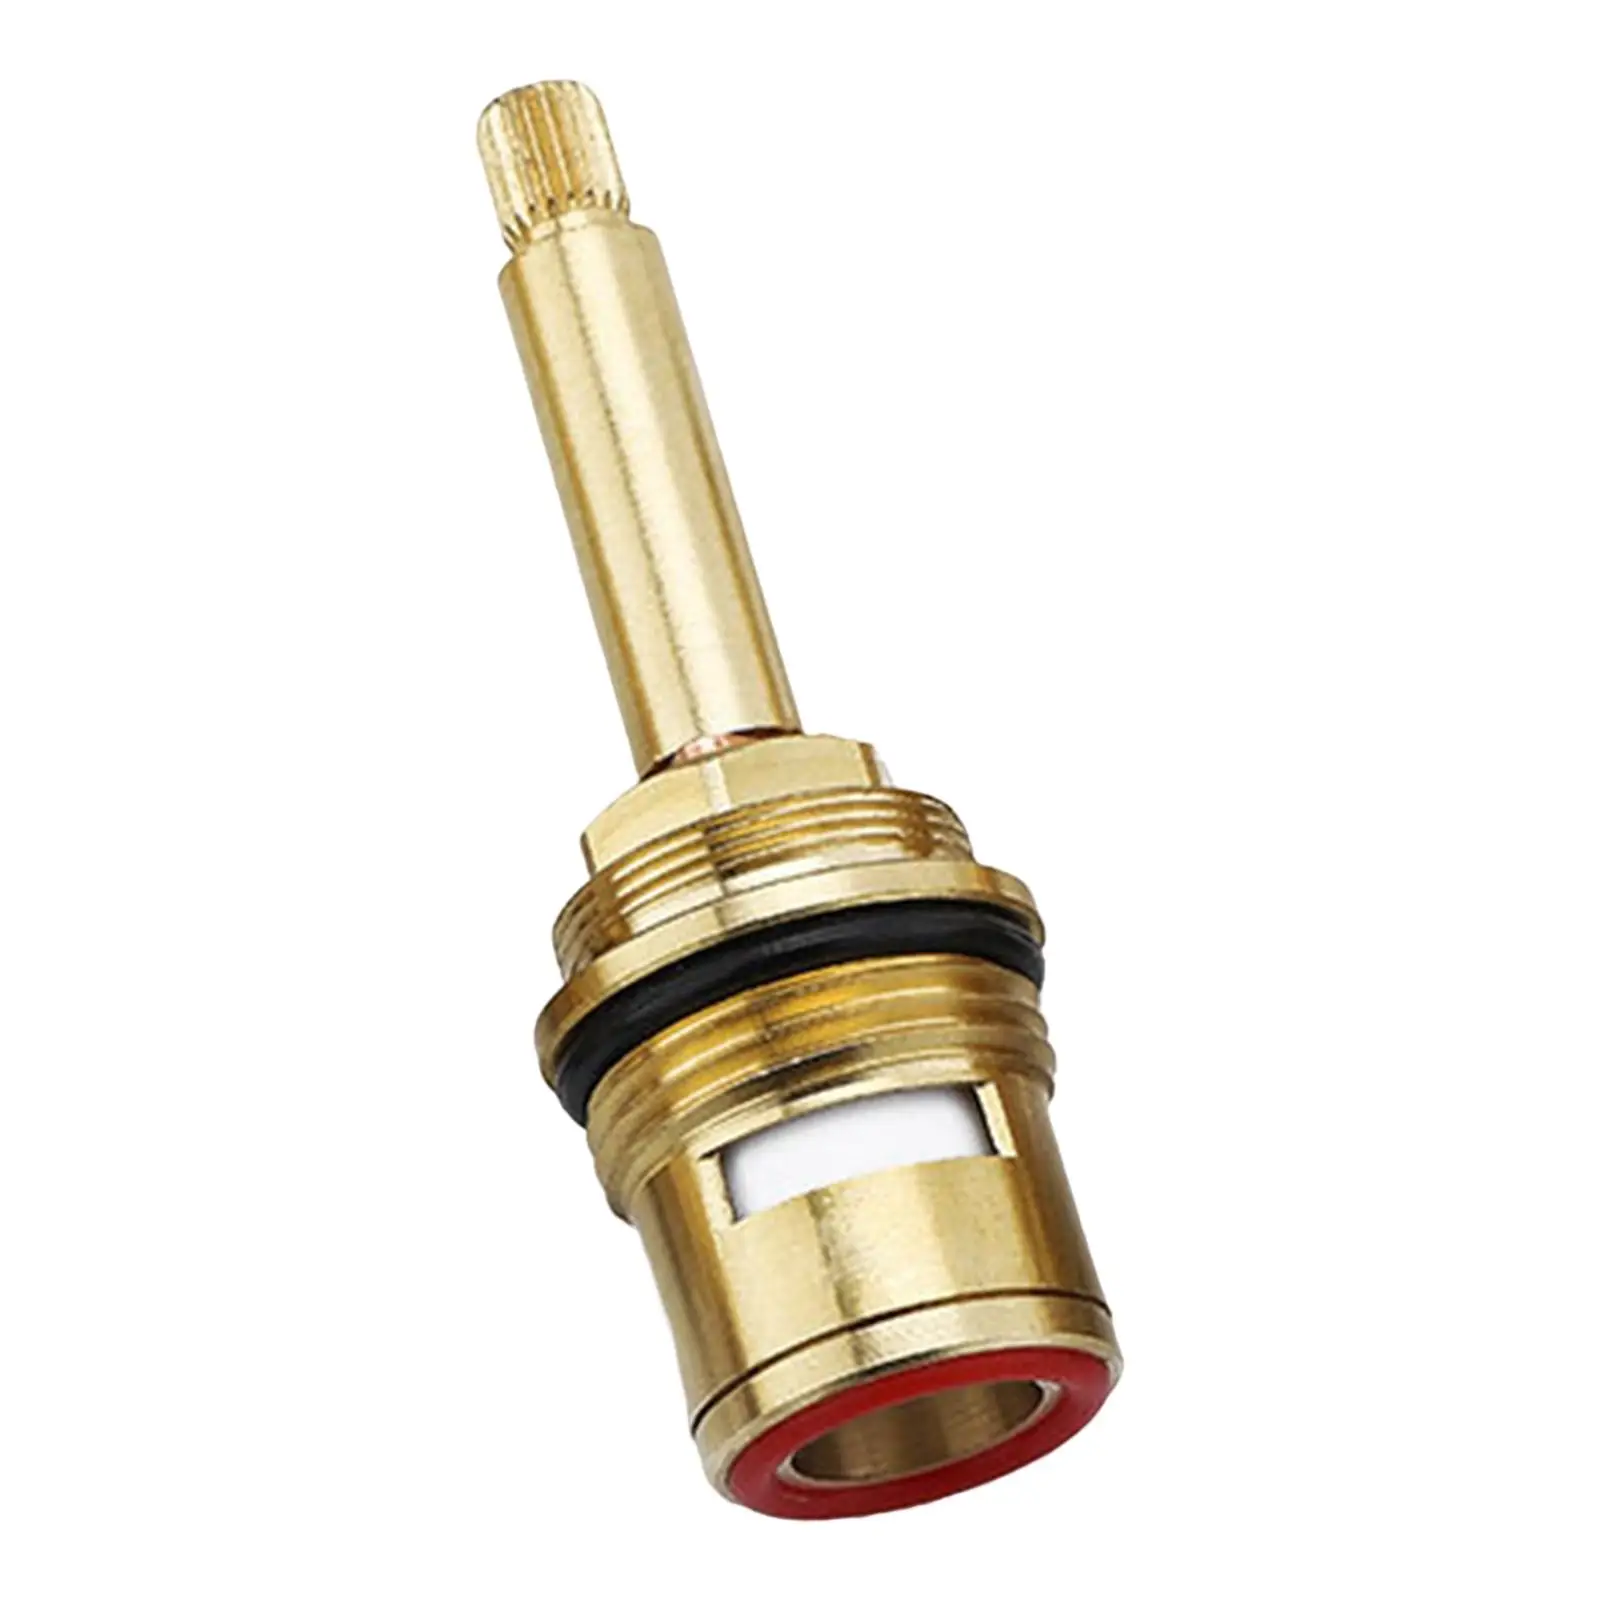 Brass ceramic stem disc cartridges for faucet valves, operating temperature: